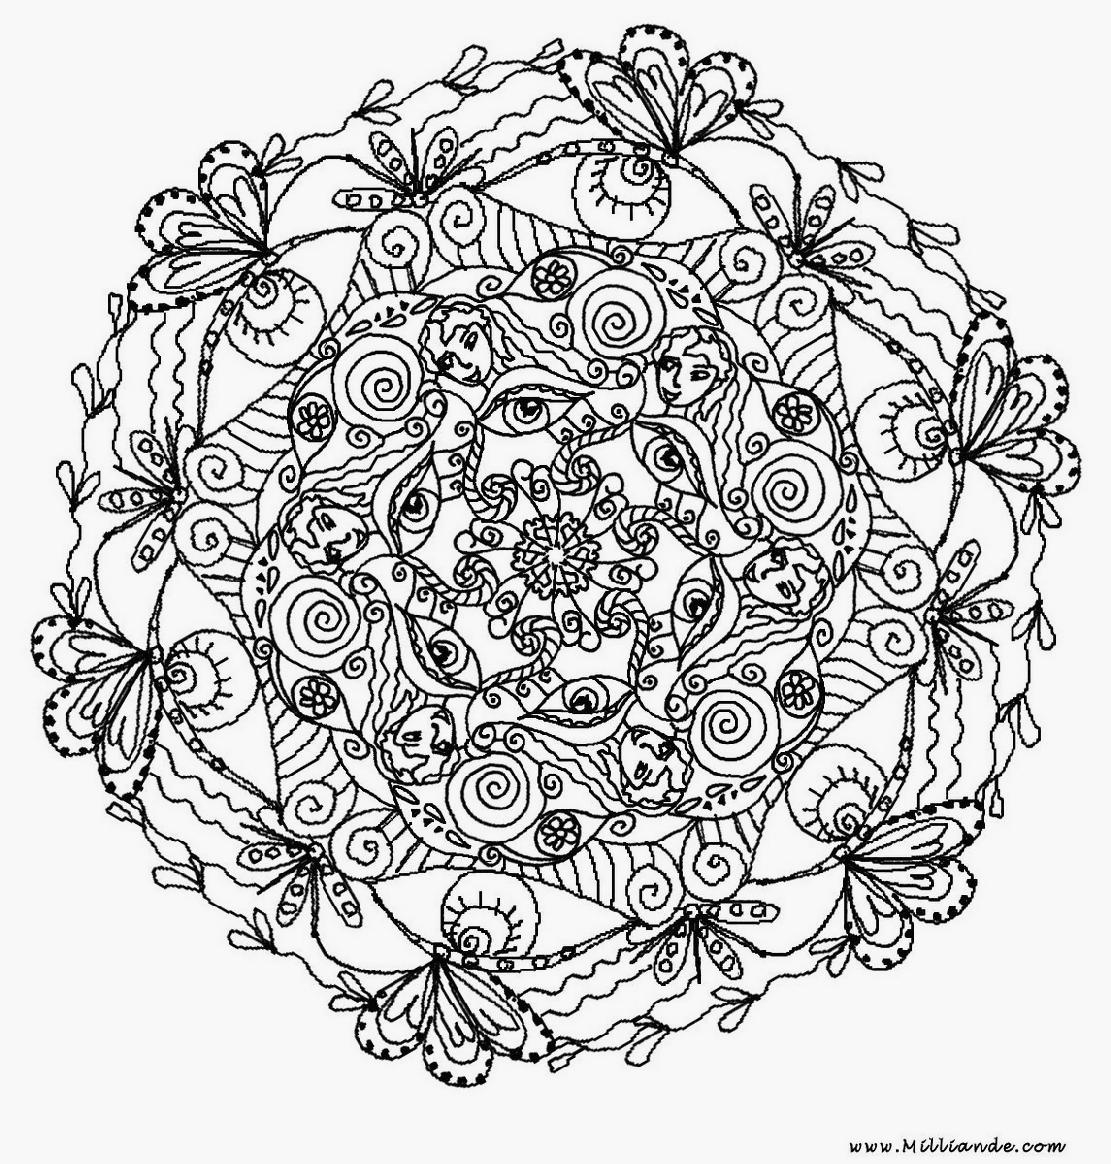 57 Dessins De Coloriage Mandalas Fleurs À Imprimer Sur verwandt mit Coloriage Mandala Dessin A Imprimer